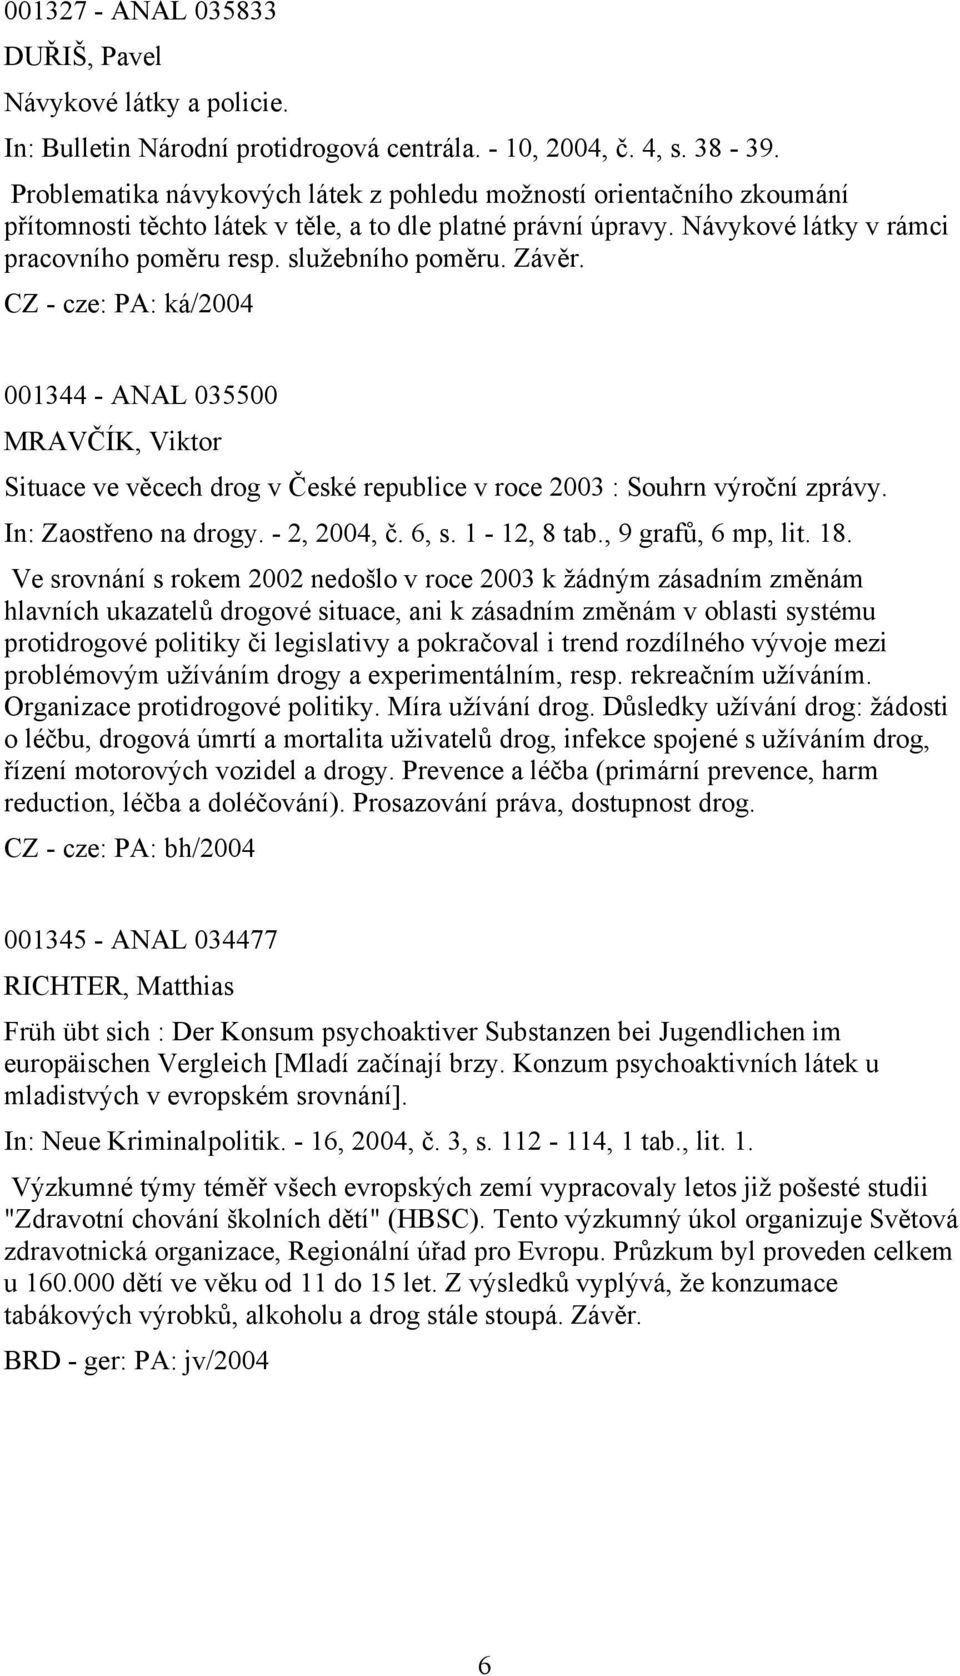 Závěr. 001344 - ANAL 035500 MRAVČÍK, Viktor Situace ve věcech drog v České republice v roce 2003 : Souhrn výroční zprávy. In: Zaostřeno na drogy. - 2, 2004, č. 6, s. 1-12, 8 tab., 9 grafů, 6 mp, lit.